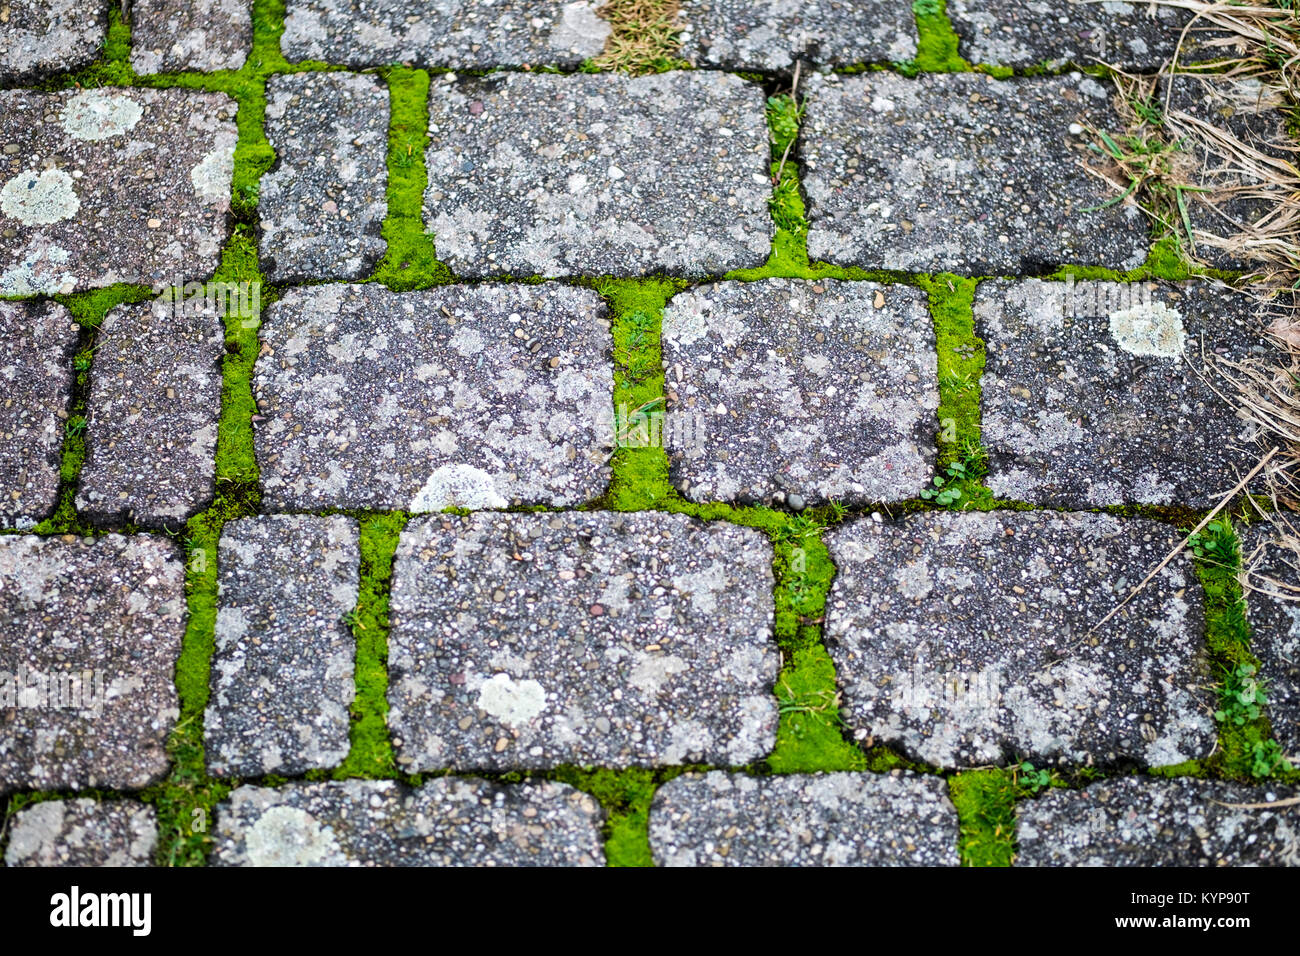 Cobblestones with moss Stock Photo